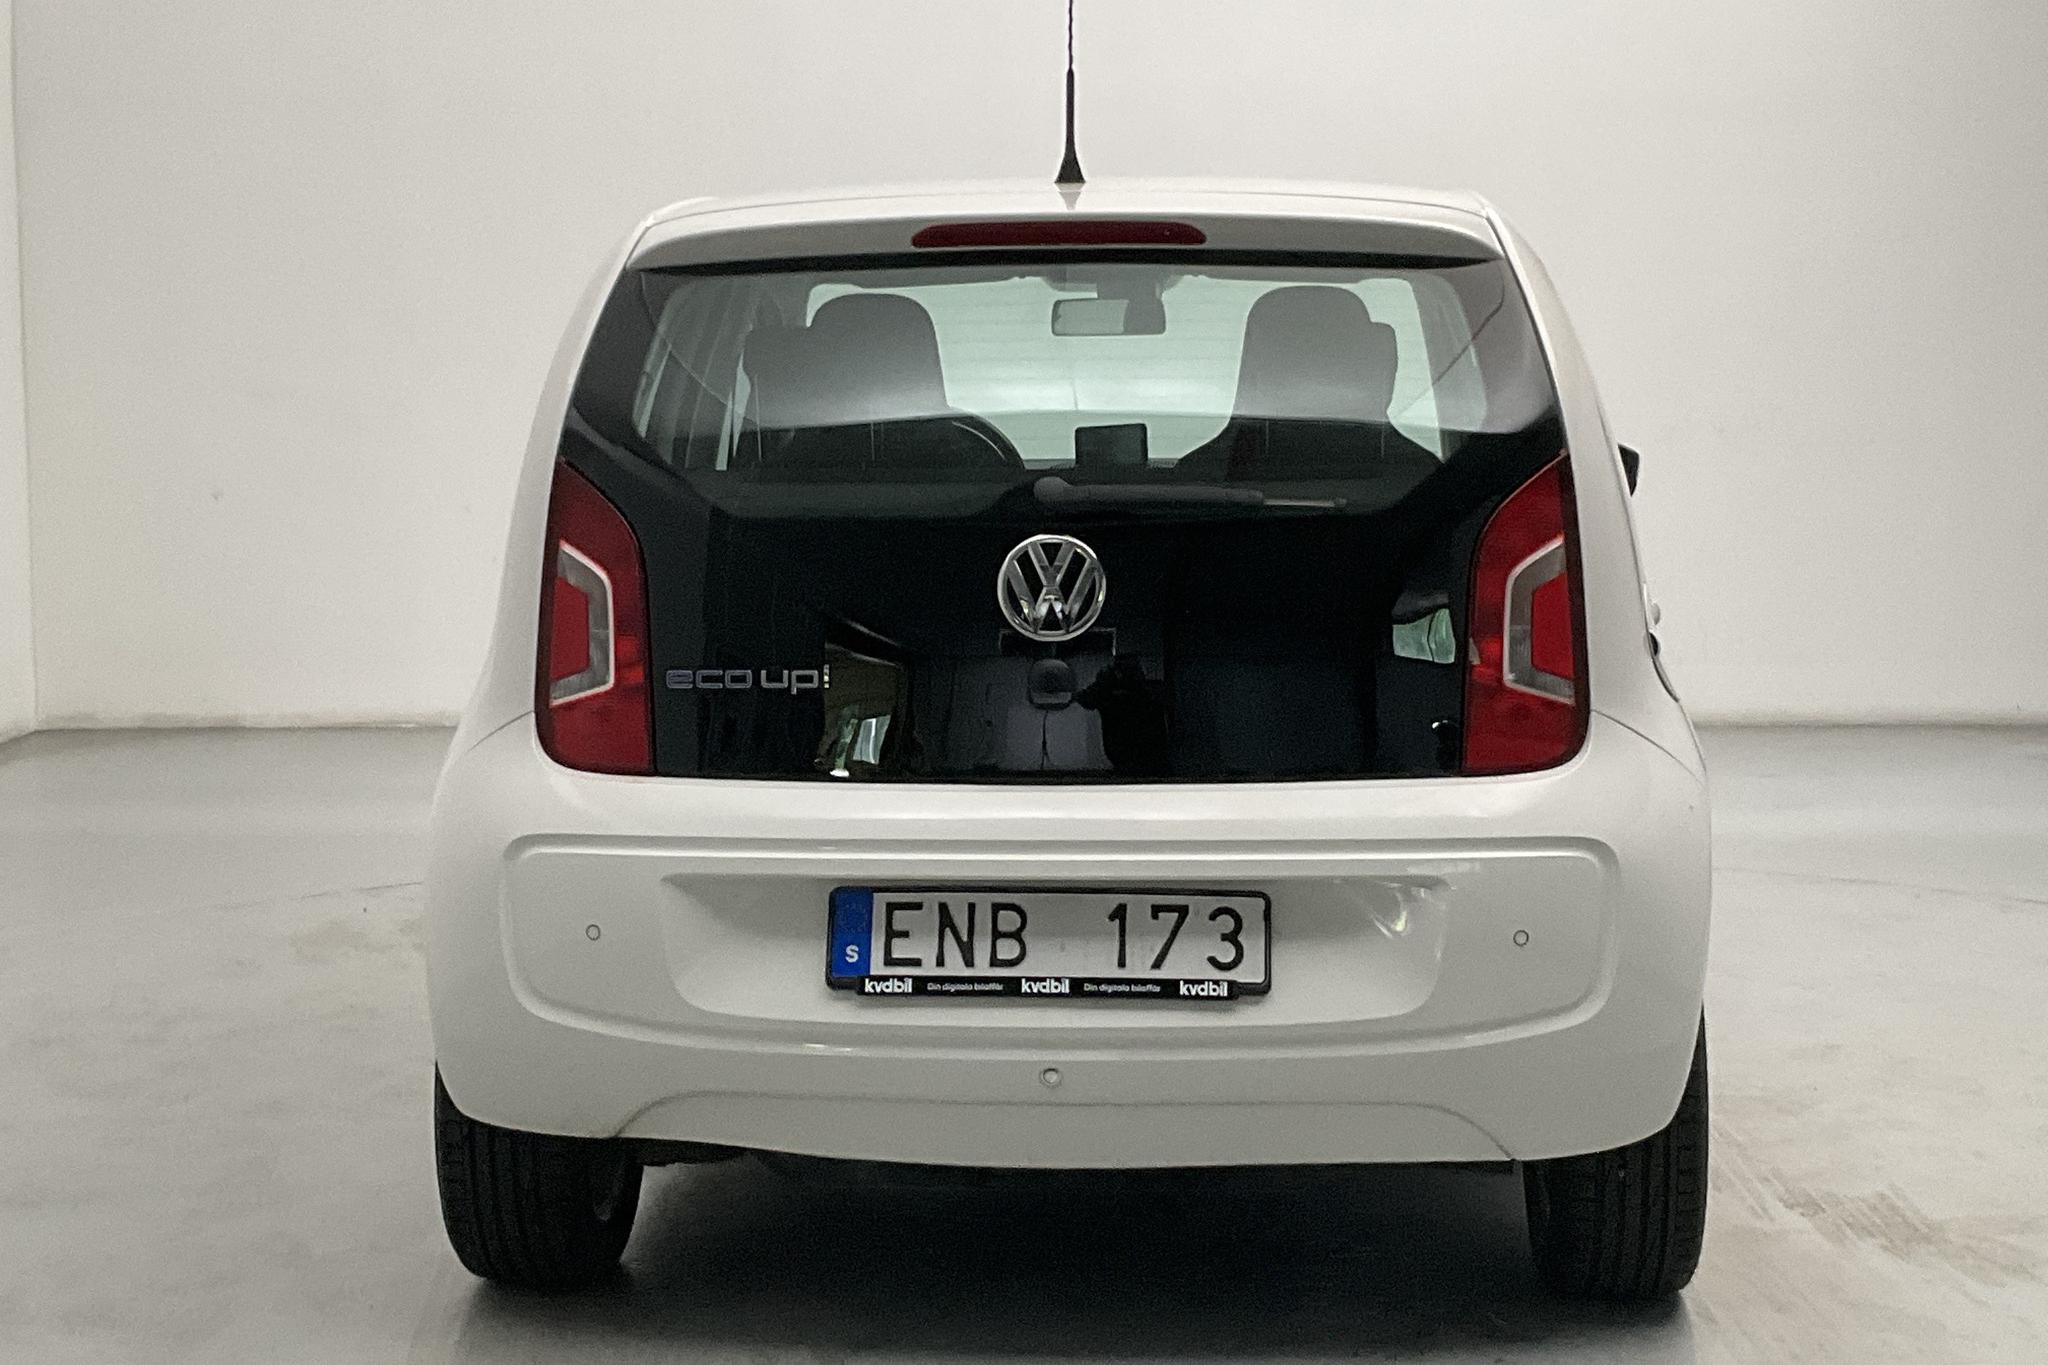 VW up! 1.0 5dr CNG (68hk) - 7 742 mil - Manuell - vit - 2013